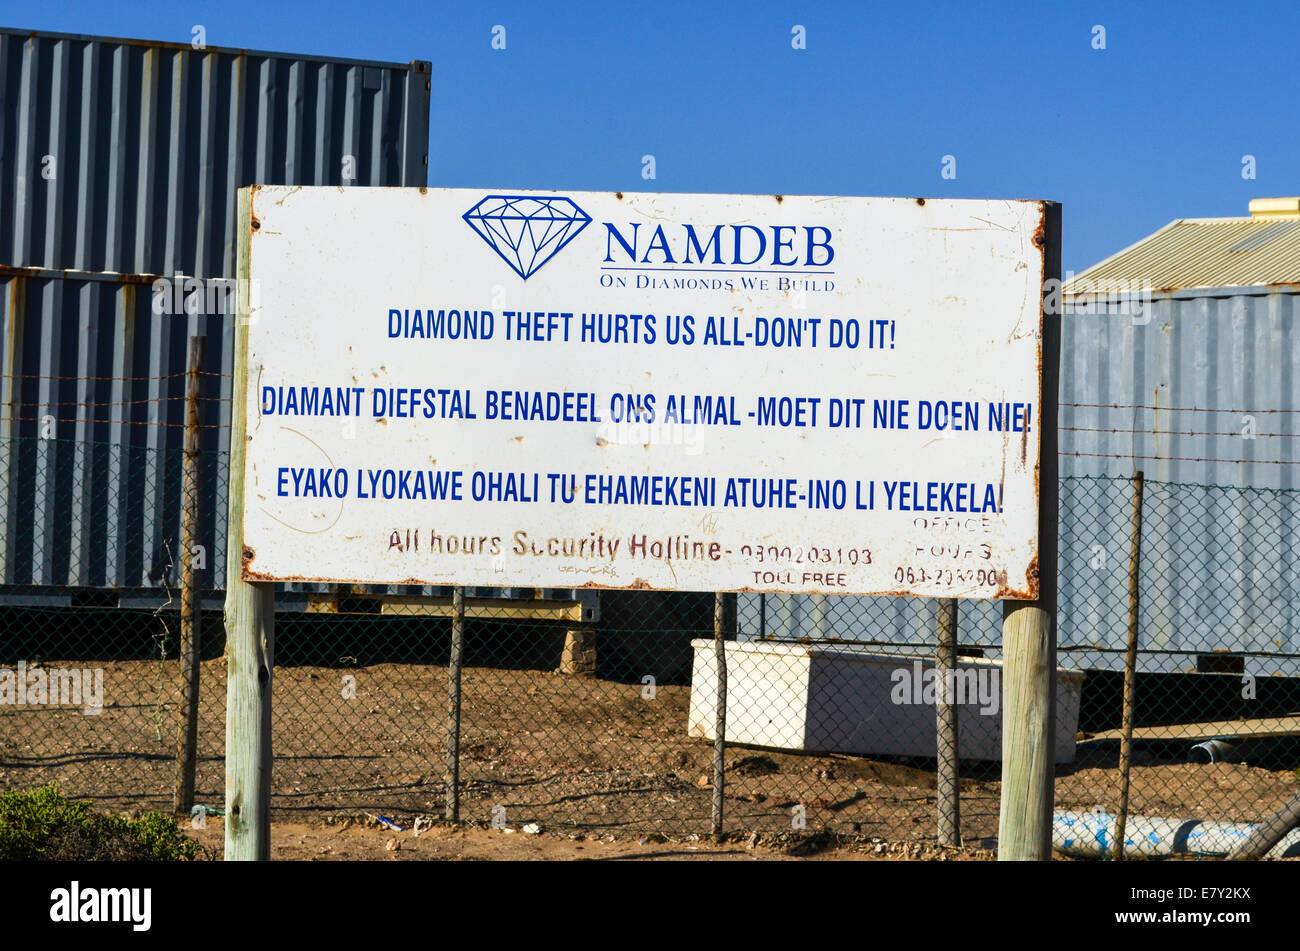 La compañía minera NAMDEB diamond señal de advertencia contra robo de diamantes y contenedores en el fondo, Lüderitz, Namibia Foto de stock